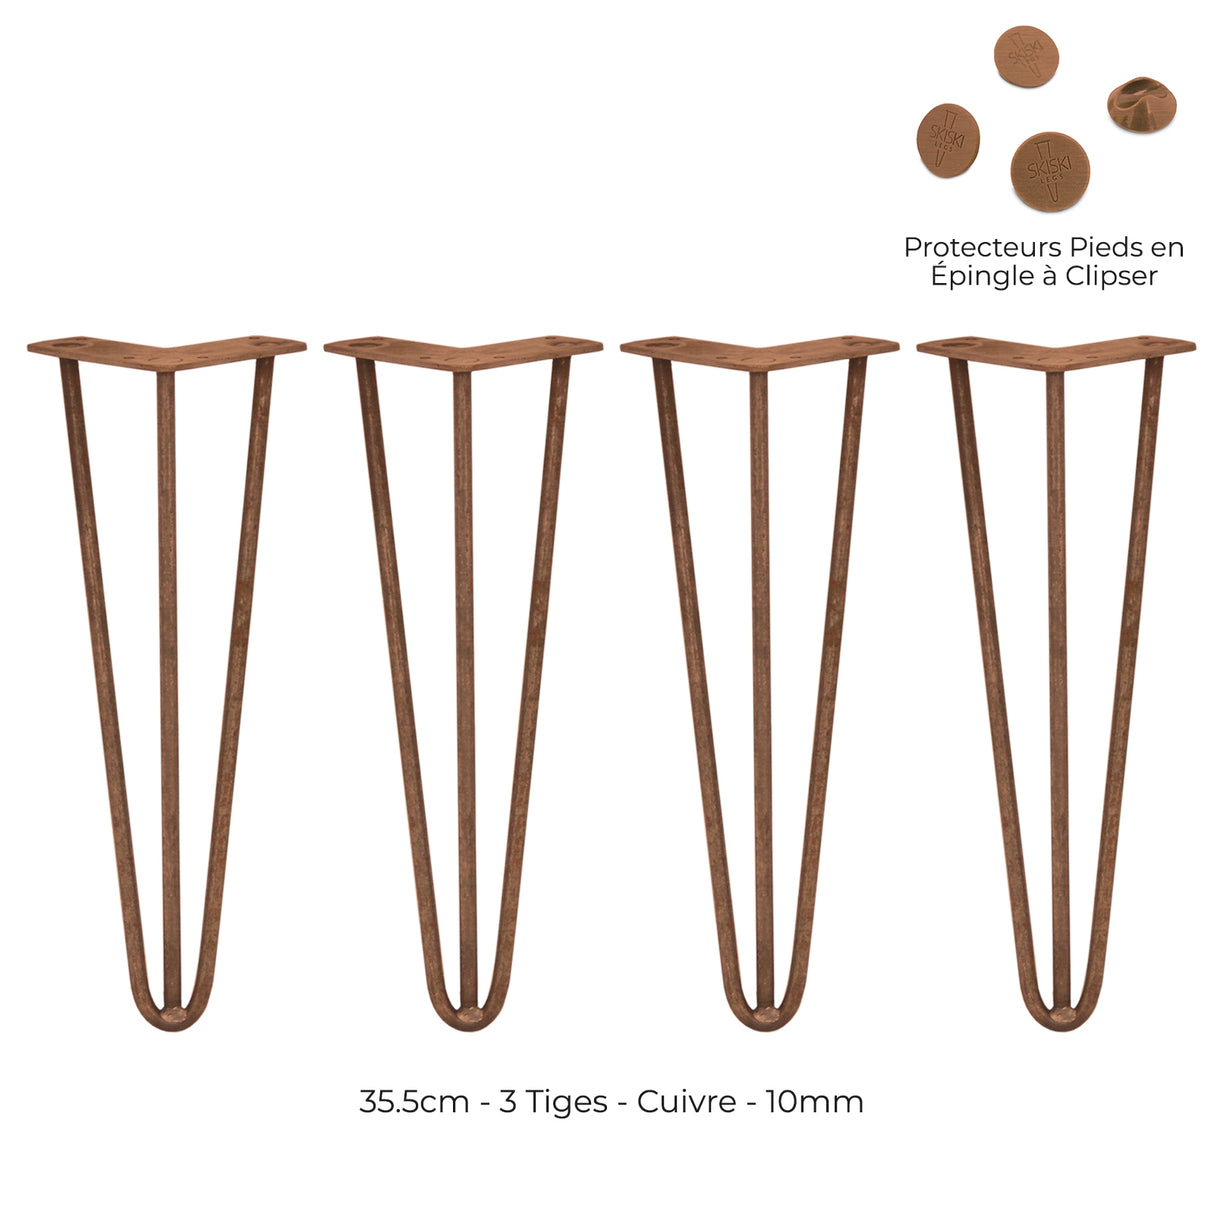 4 Pieds de Table en Epingle à Cheveux - 35,5cm - 3 Tiges - 10mm - Cuivre